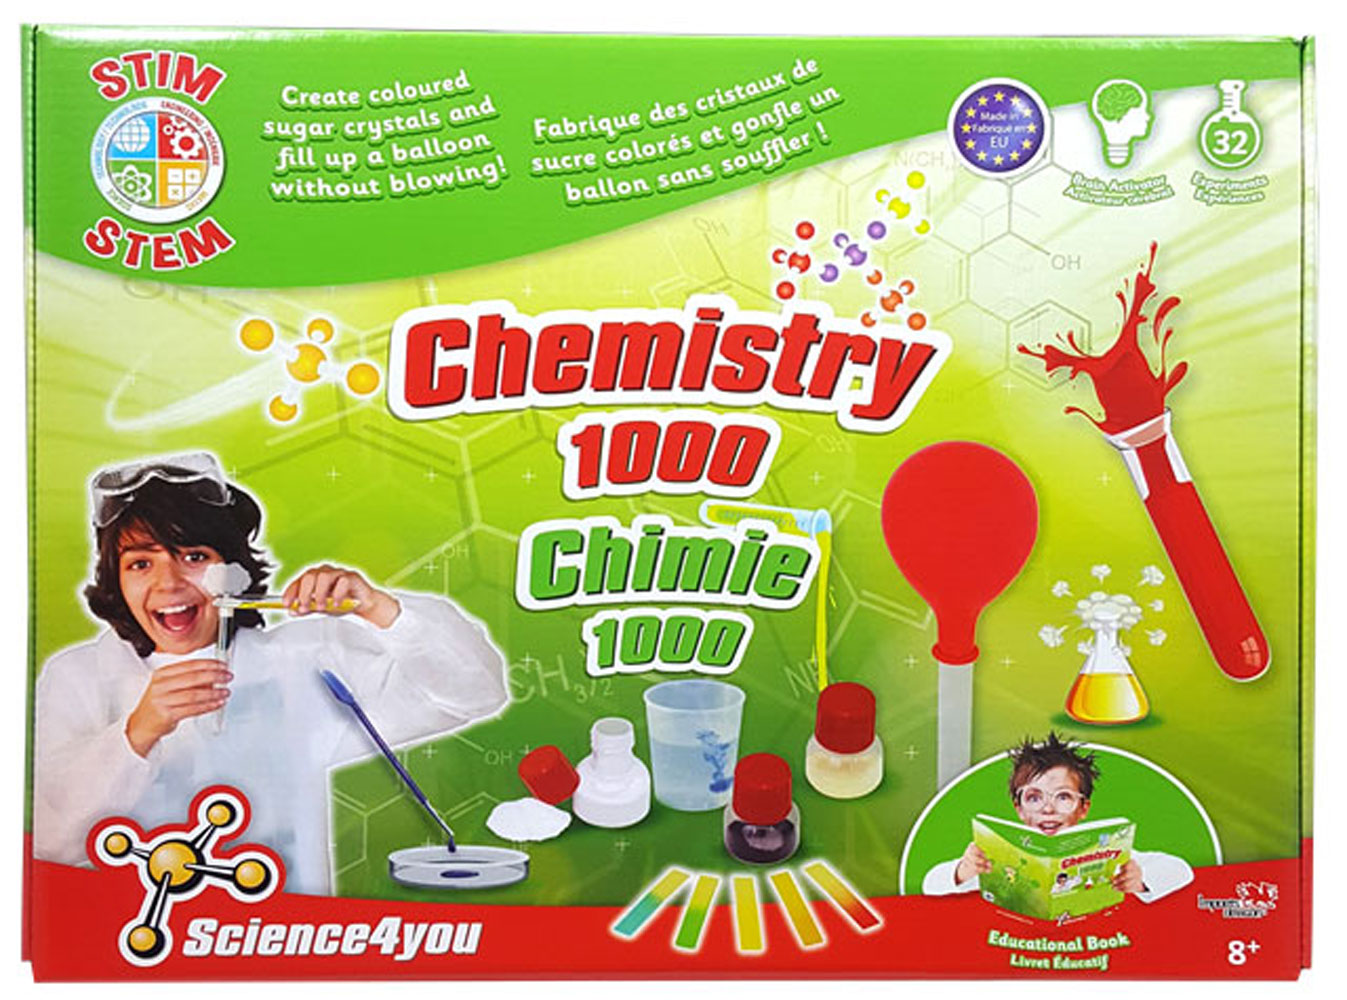 Science4you Fabrique de Cristaux pour Enfants 8 Ans - Kit Chimie + 8  Experiences Scientifiques pour Enfants